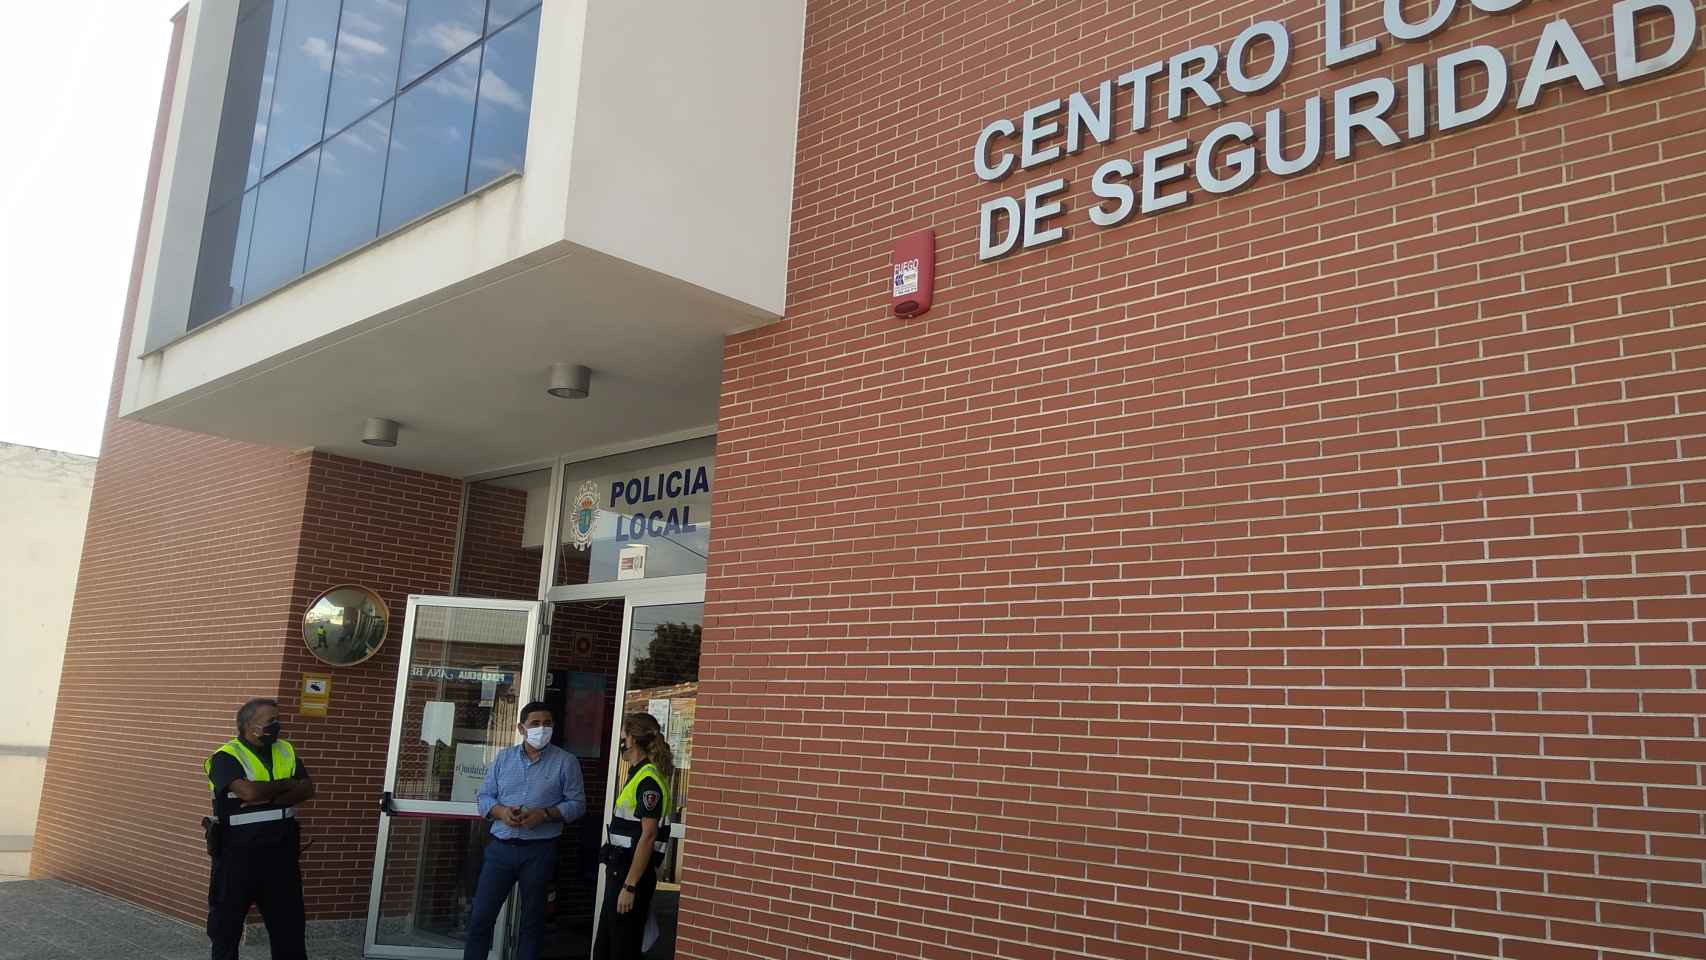 El concejal de Seguridad Ciudadana, Francisco José Caravaca, este lunes, en las dependencias policiales charlando con dos de los tres agentes que componían el turno.